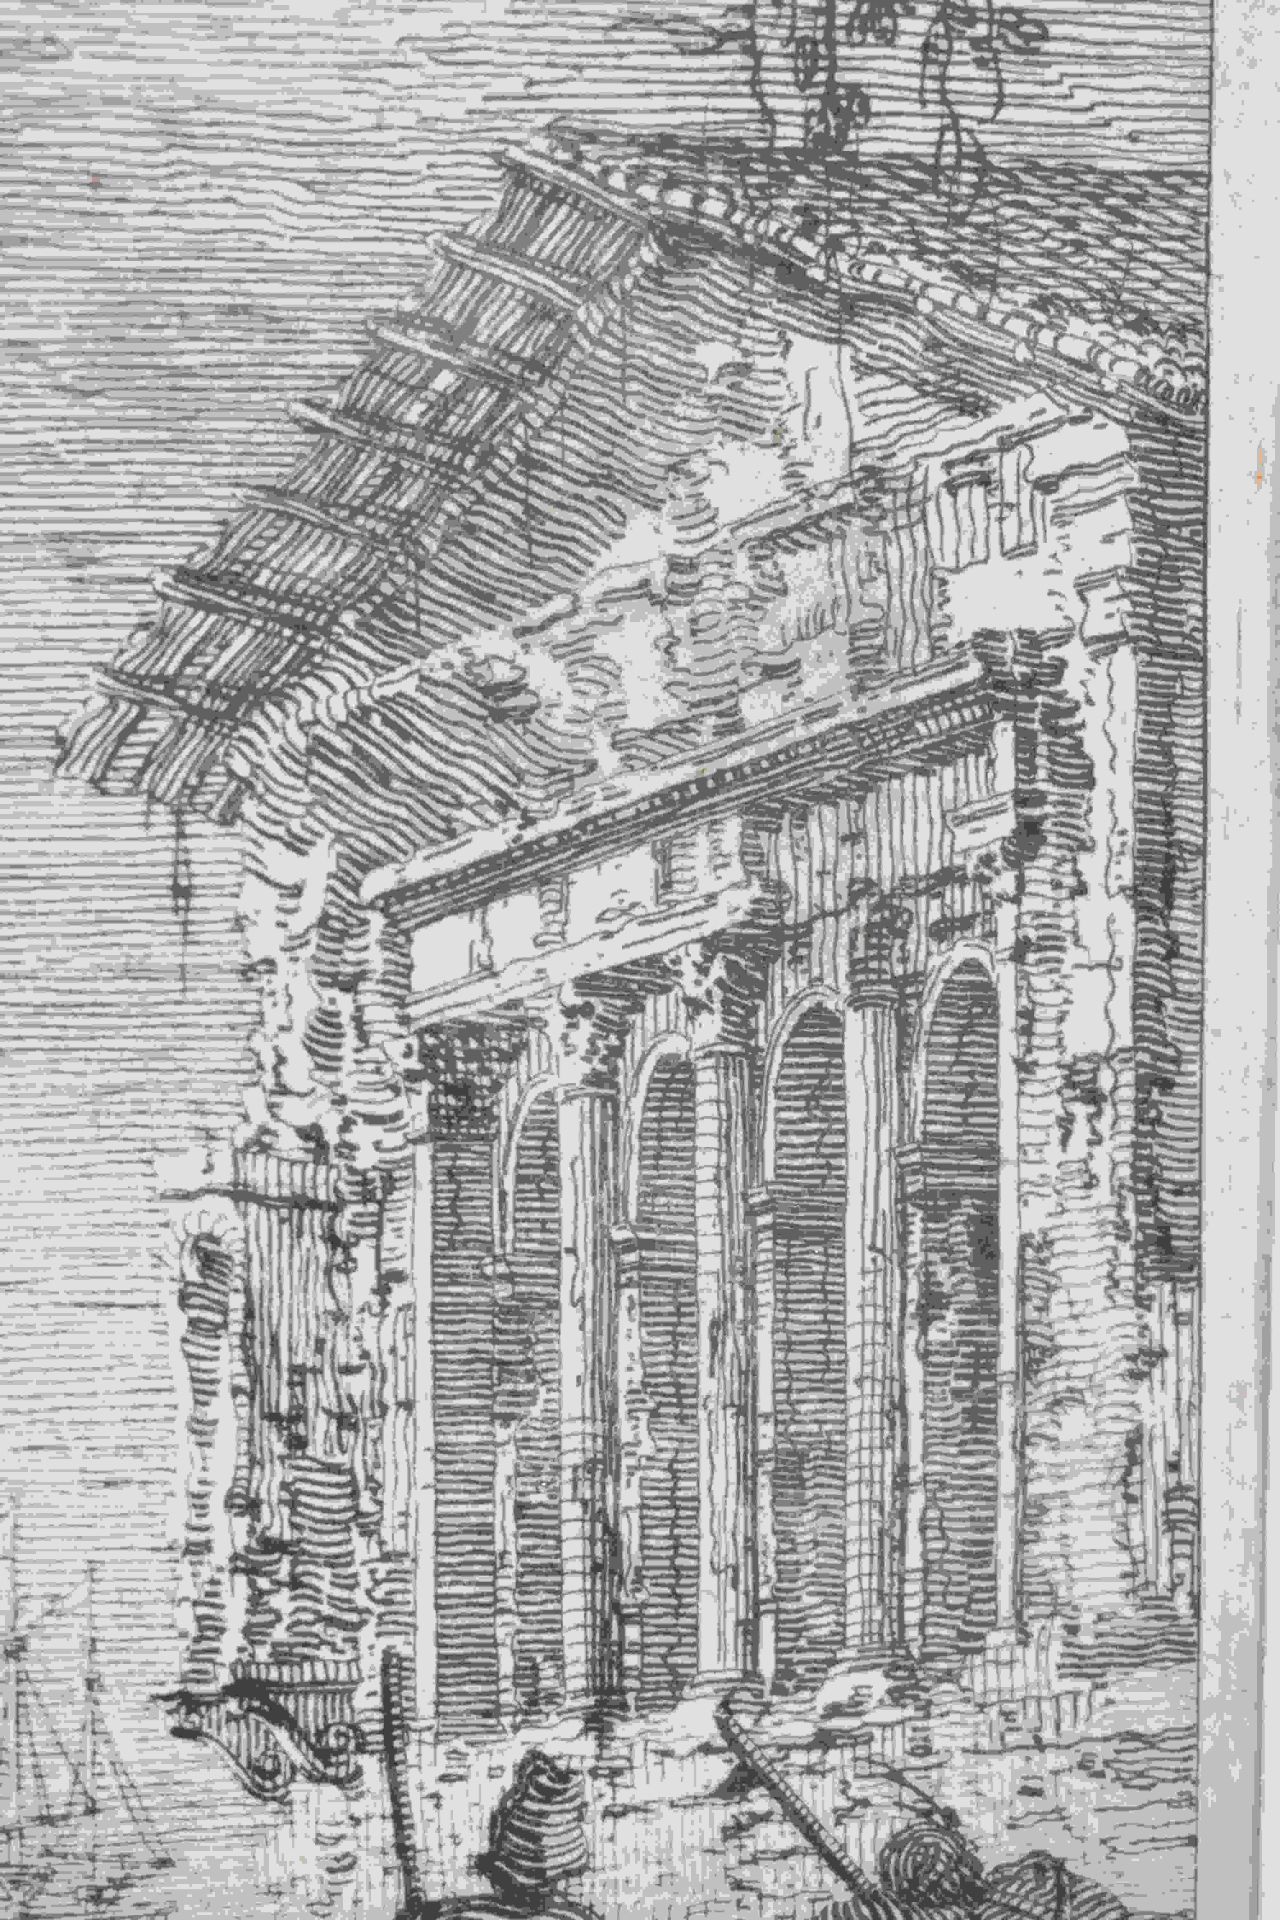 Canal, Giovanni Antonio, gen. Canaletto: Il portico con la lanterna - Image 19 of 24